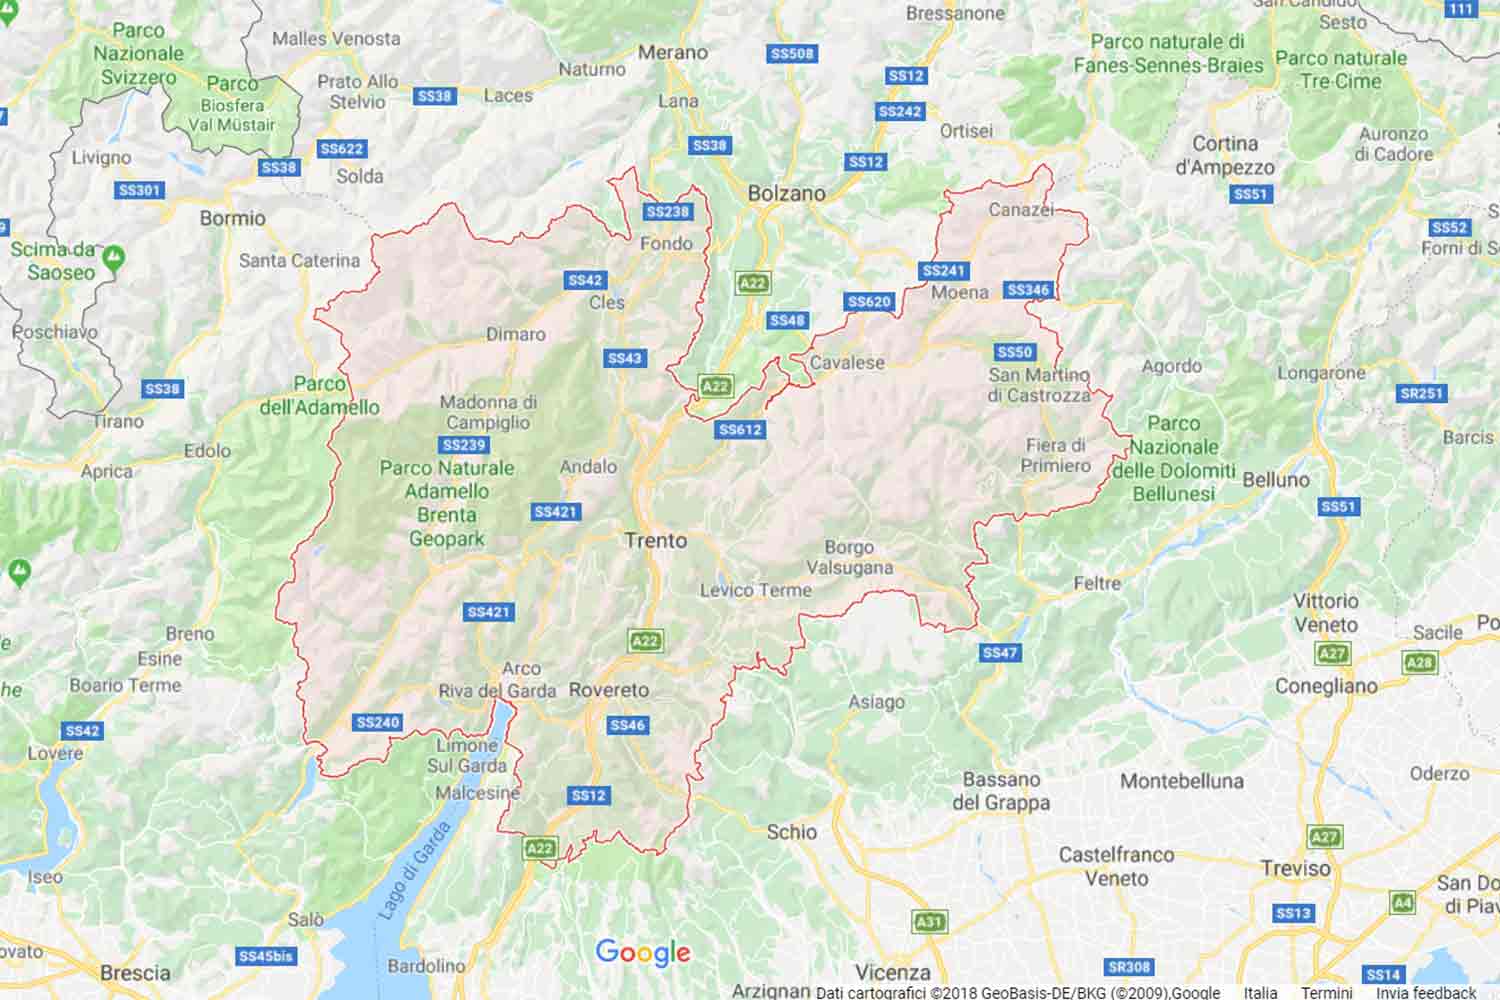 Trentino - Trento - Ossana Preventivi Veloci google maps